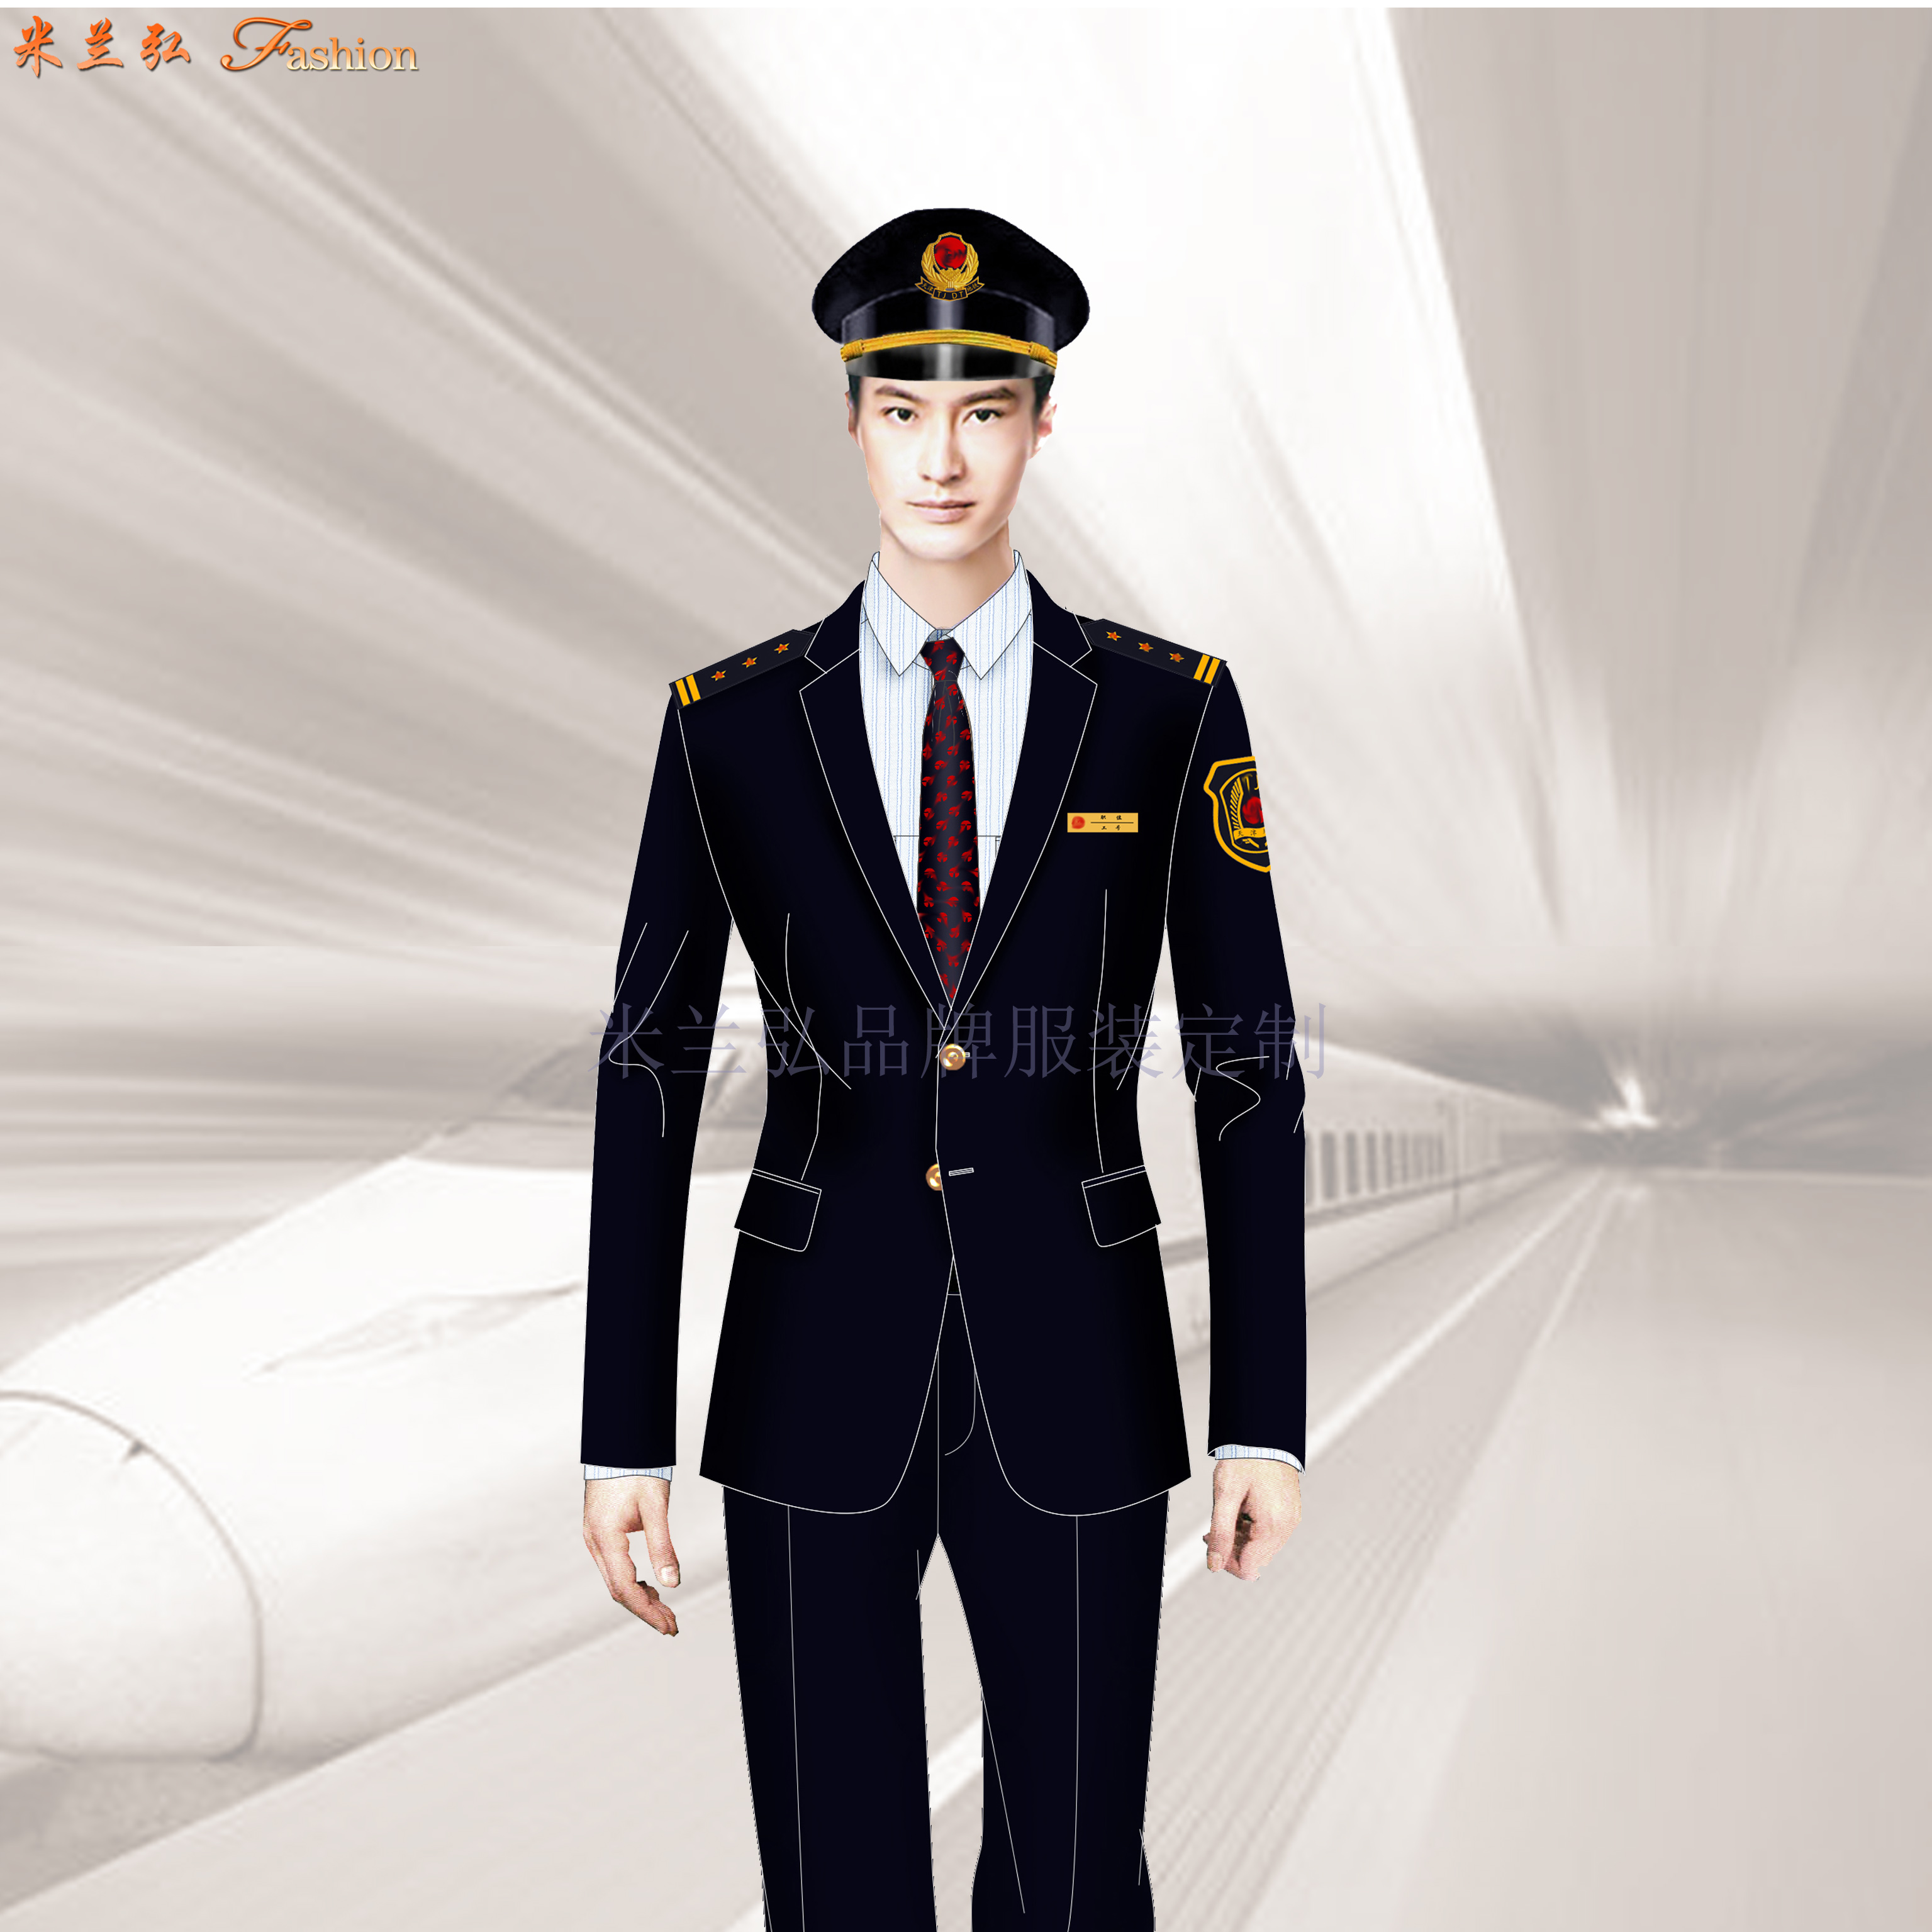 安徽机场服装定制:机务职业装订制 - 米兰弘厂家-www.milanho.com